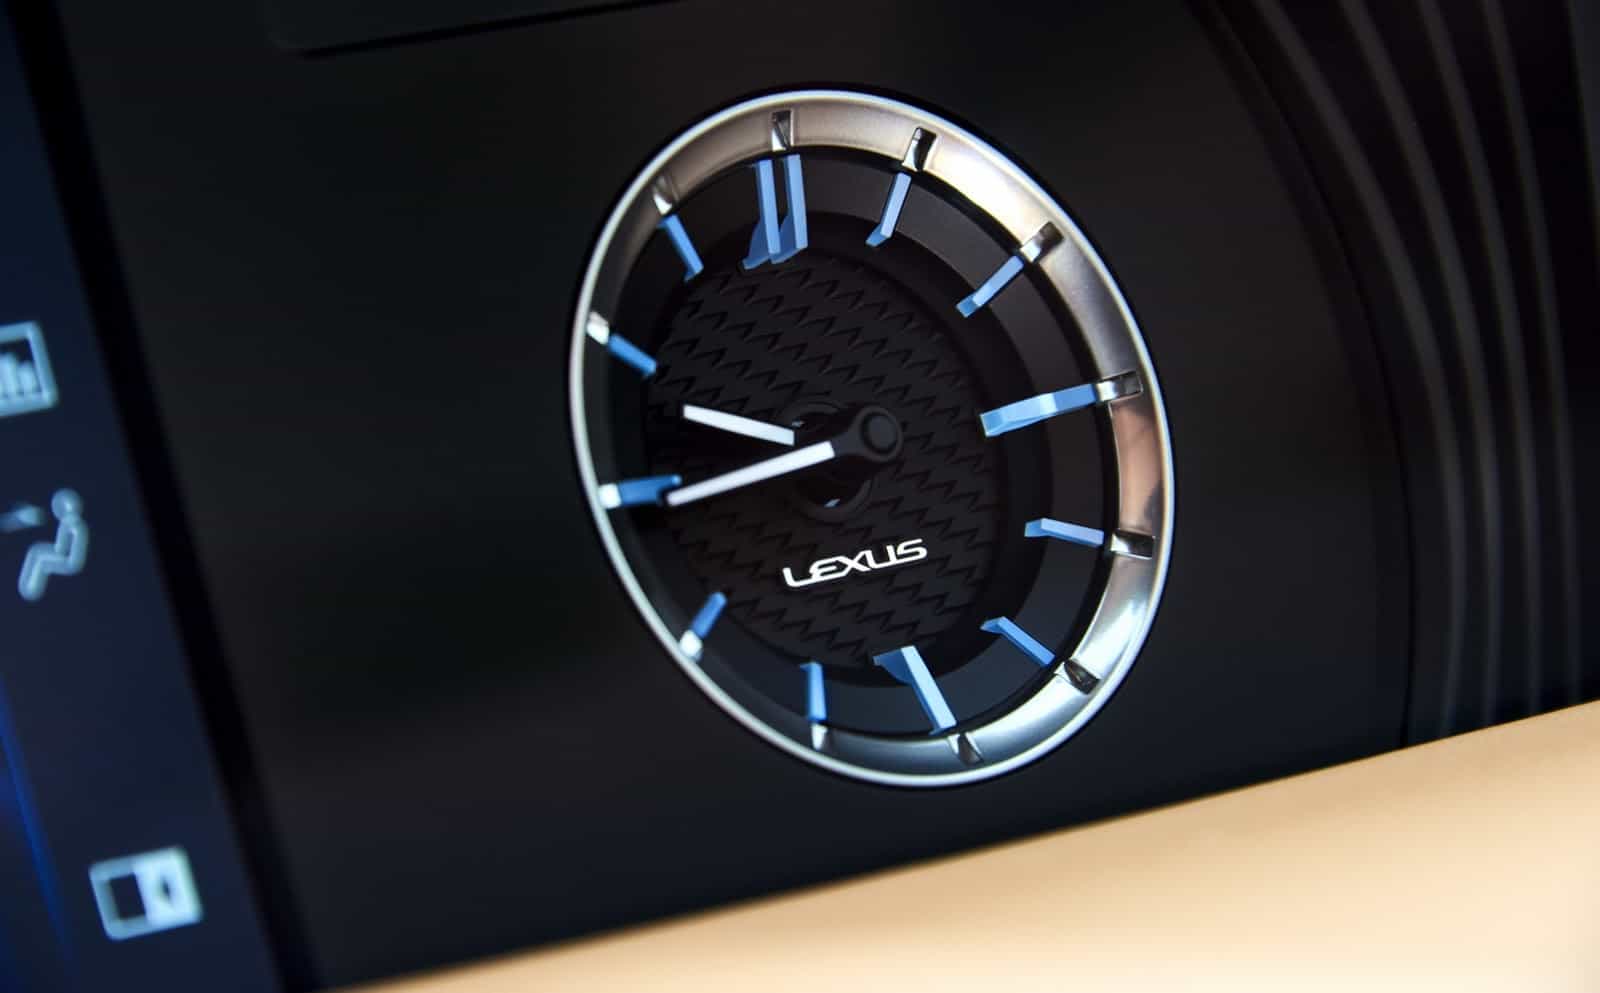 ¡Súper Coche! El nuevo Coupé Lexus LC está ¡BRUTAL!